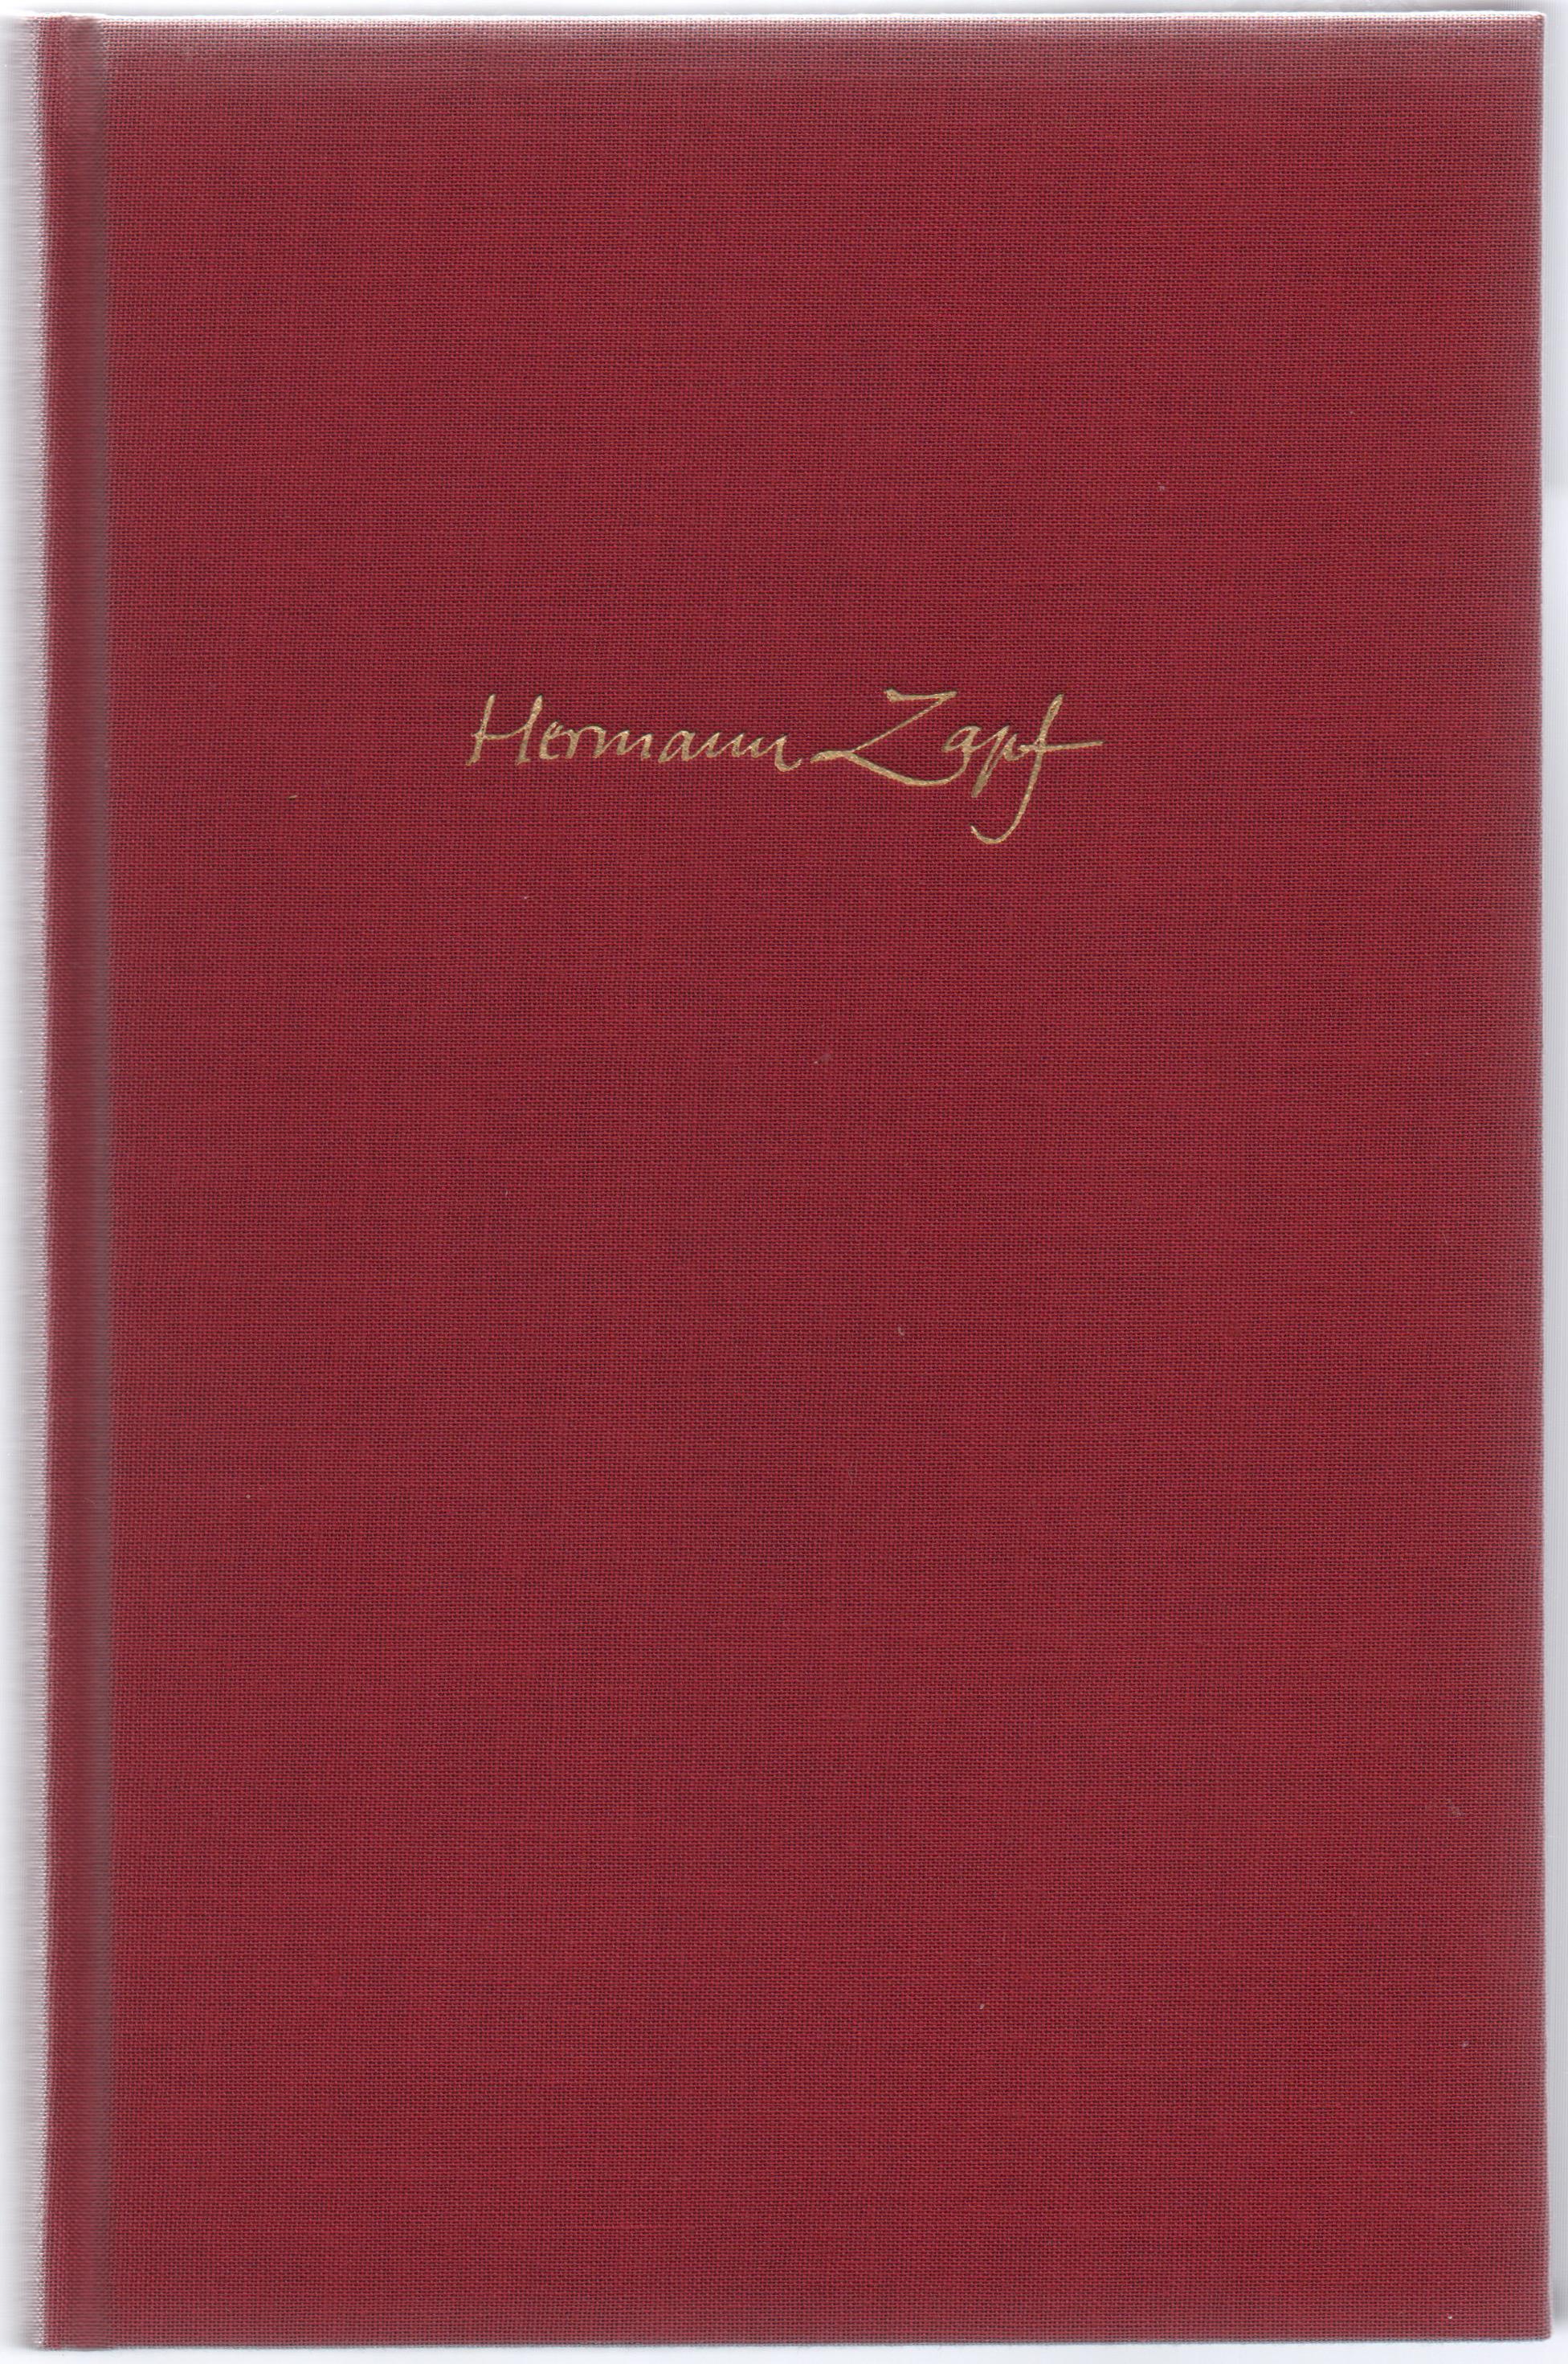 Hermann Zapf & the World He Designed